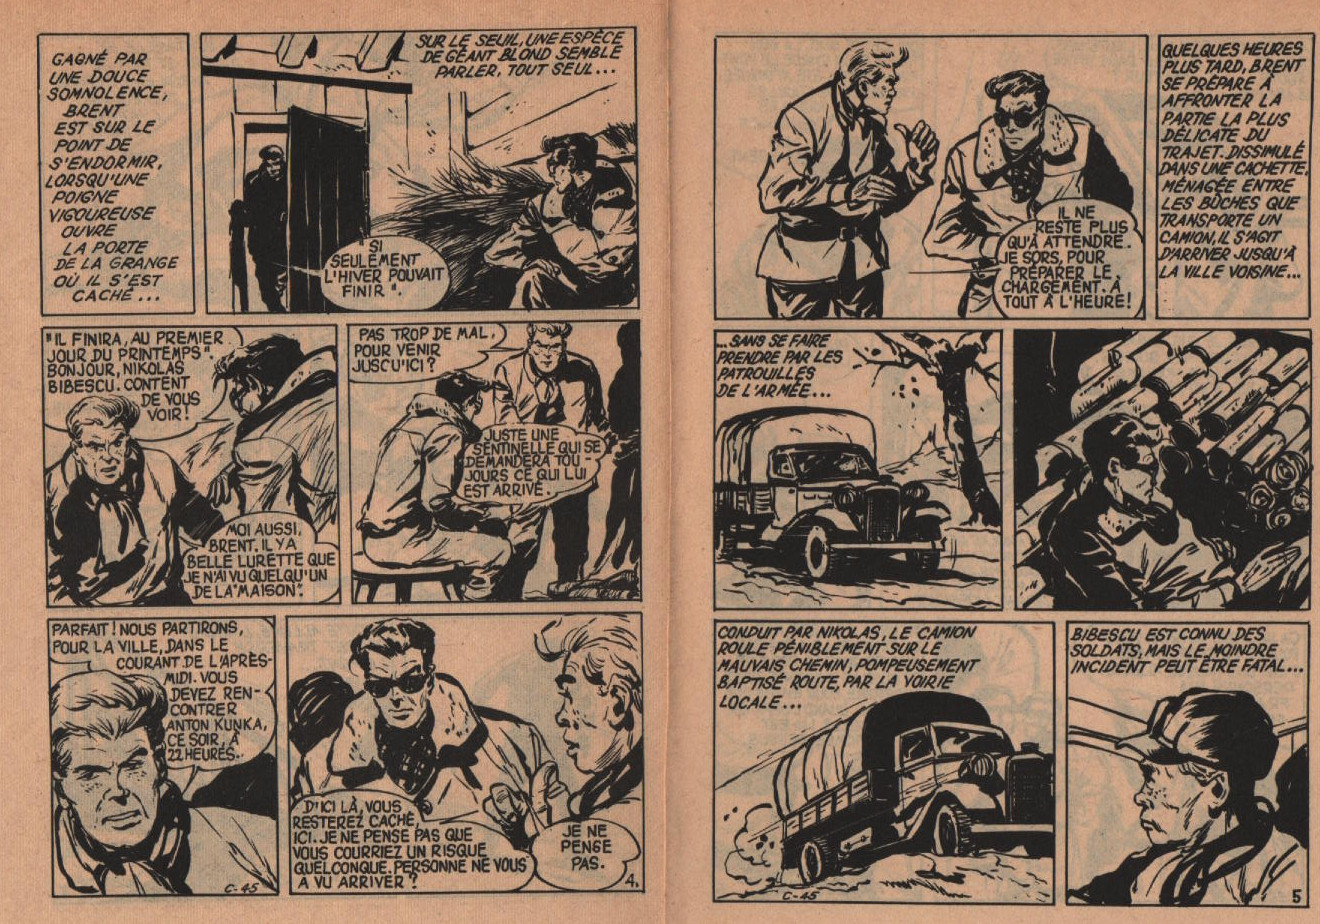 « Agent secret Brent : Réseau Est » : Cap 7 n° 45 (11/1962).